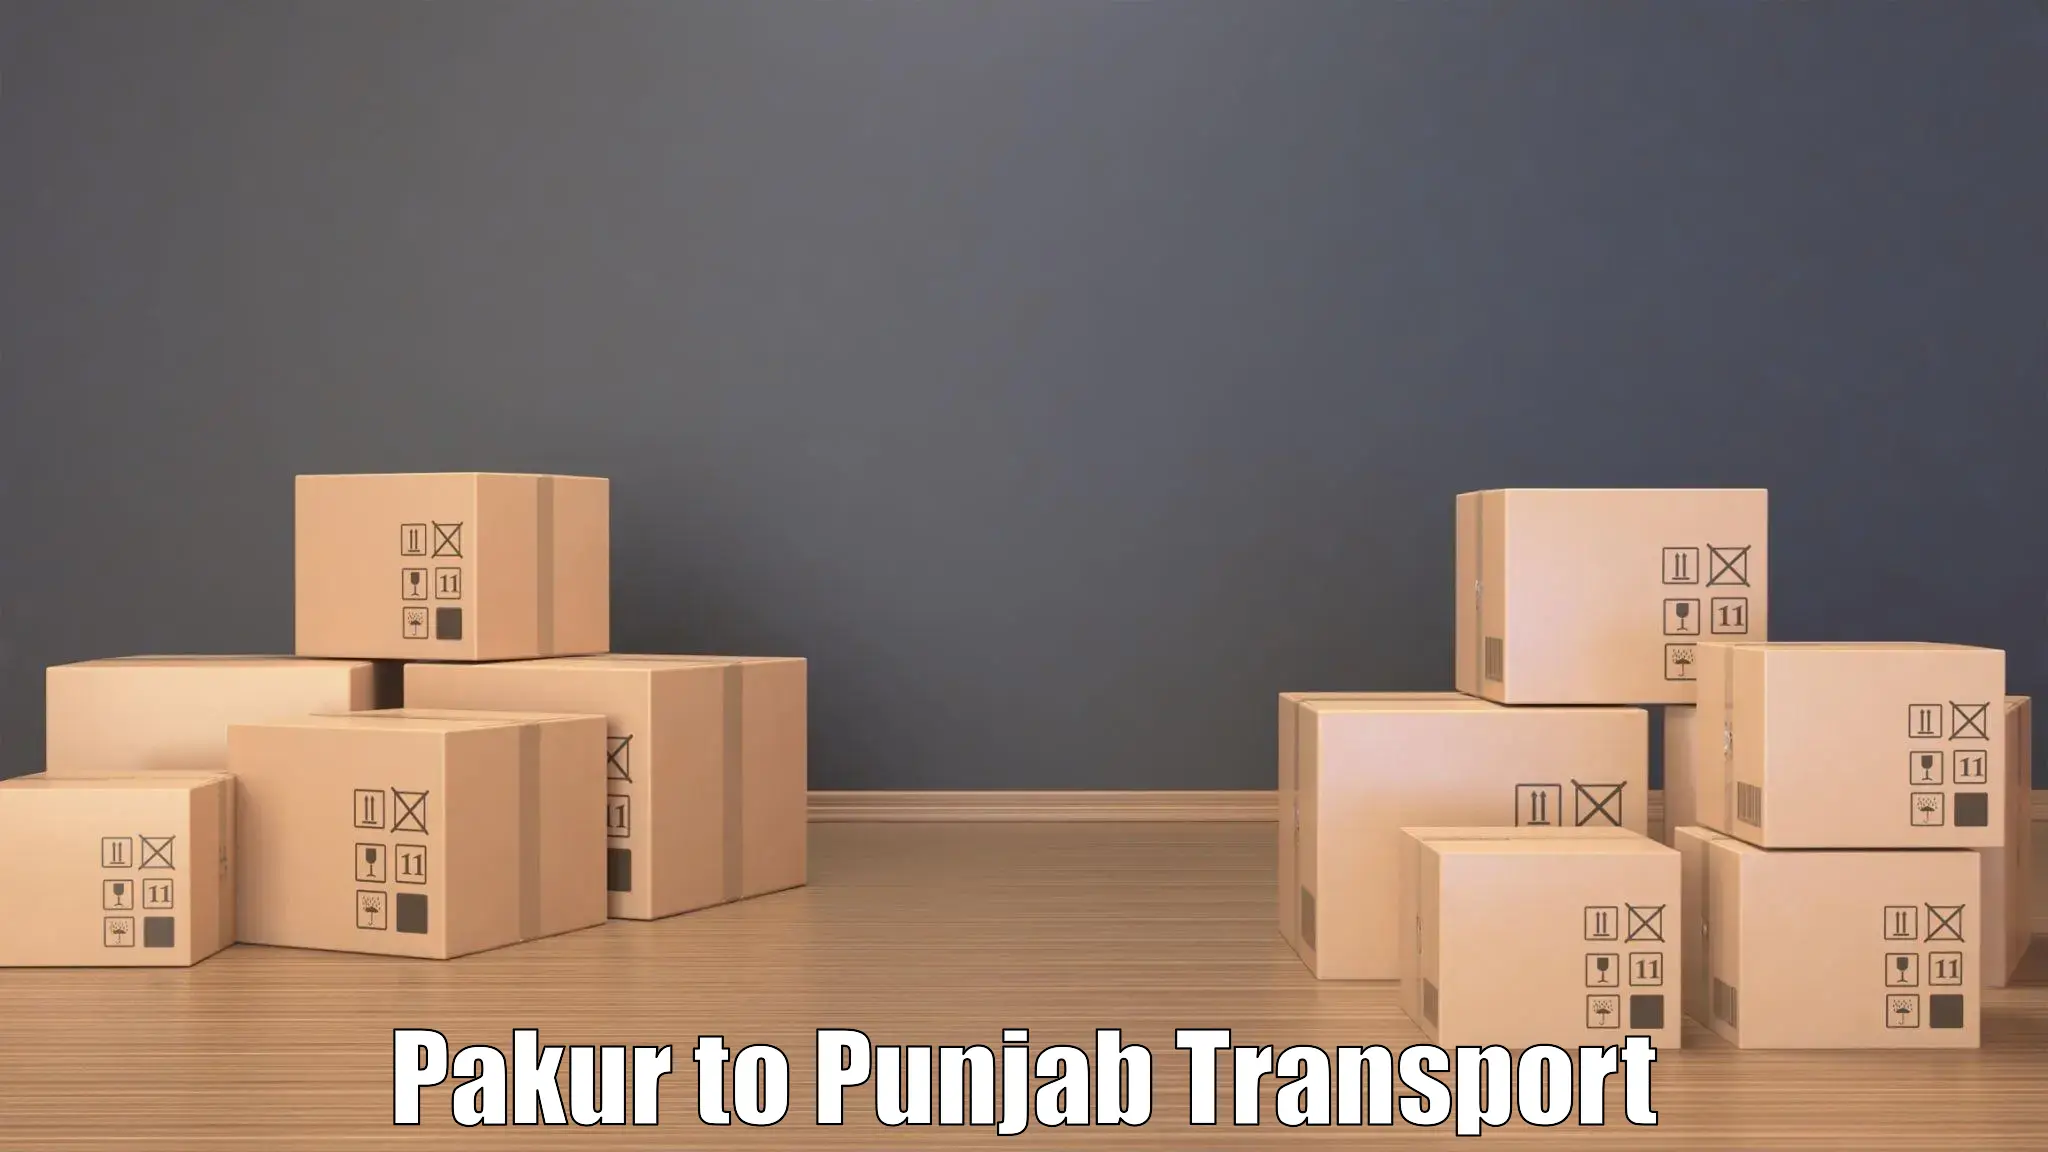 Two wheeler transport services Pakur to Raikot